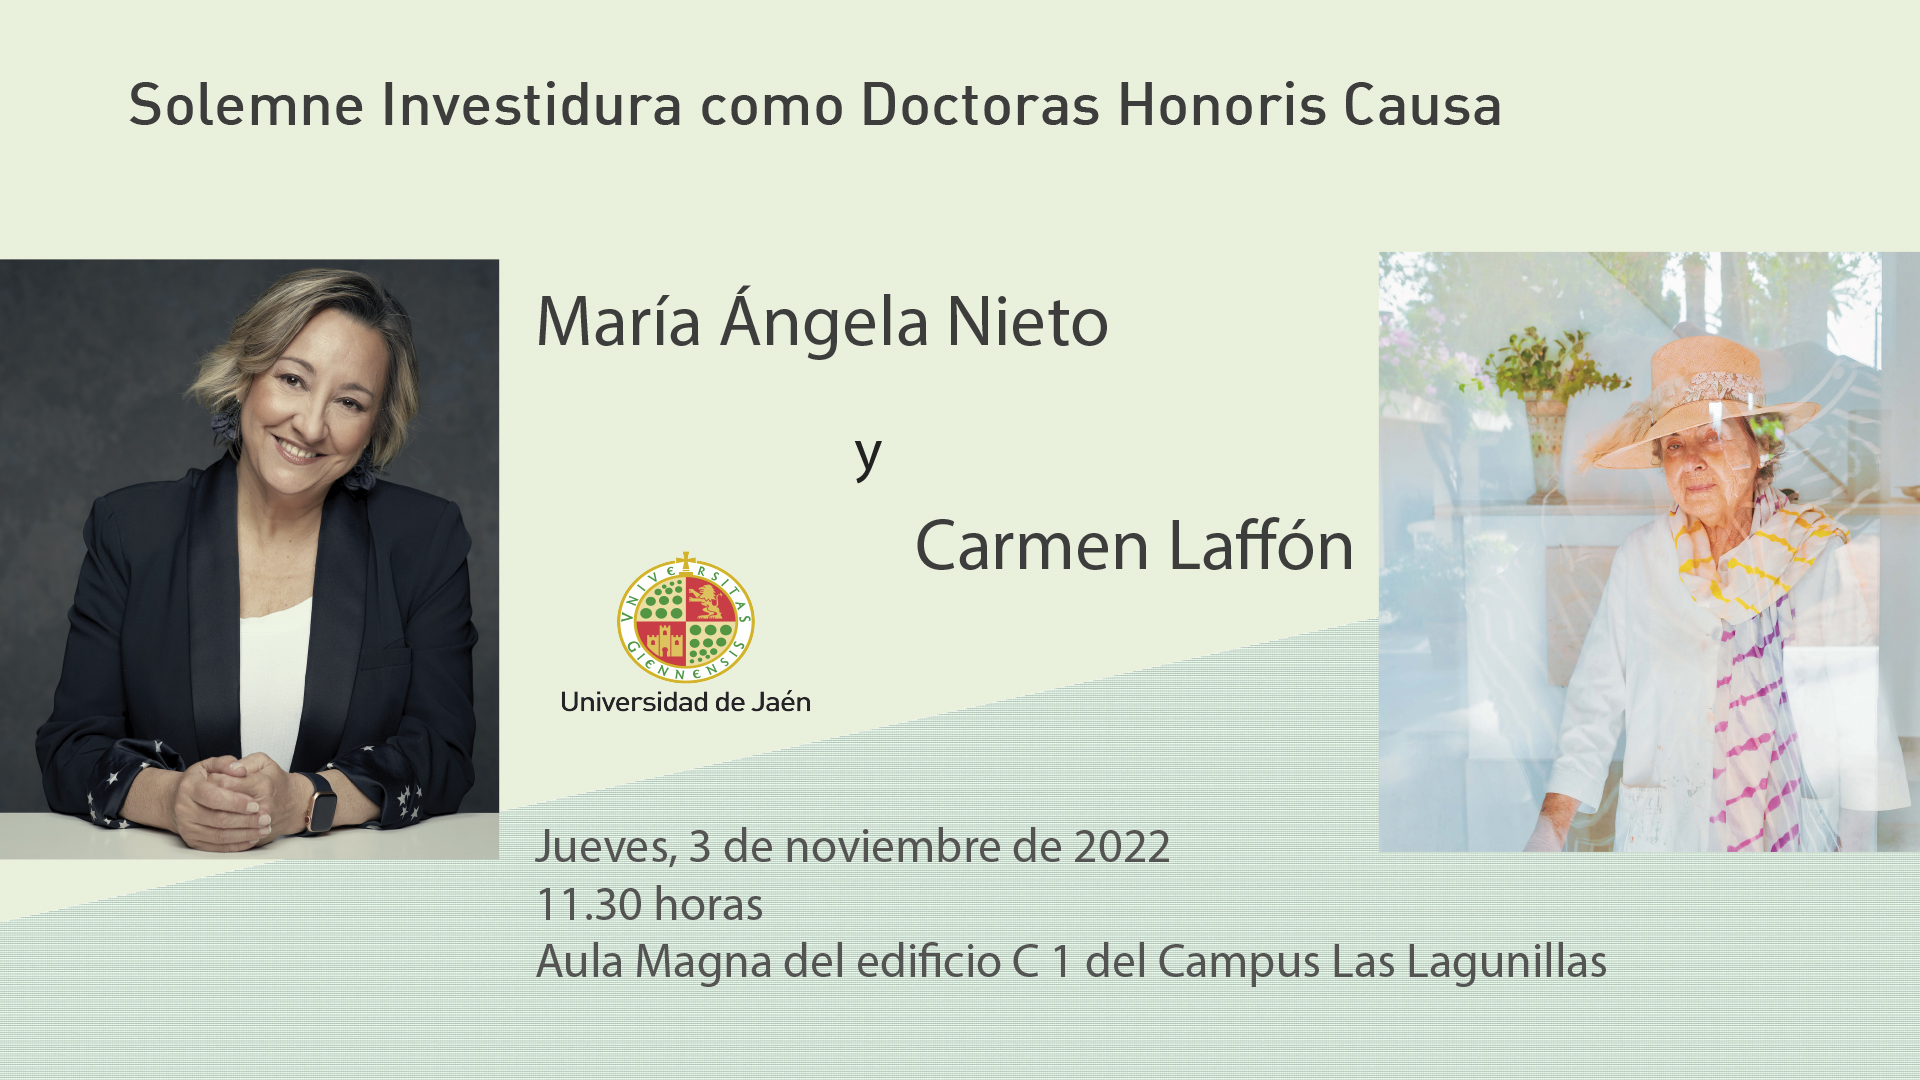 Solemne Acto de Investidura Doctoras Honoris Causa por la UJA de María Ángela Nieto y Carmen Laffón